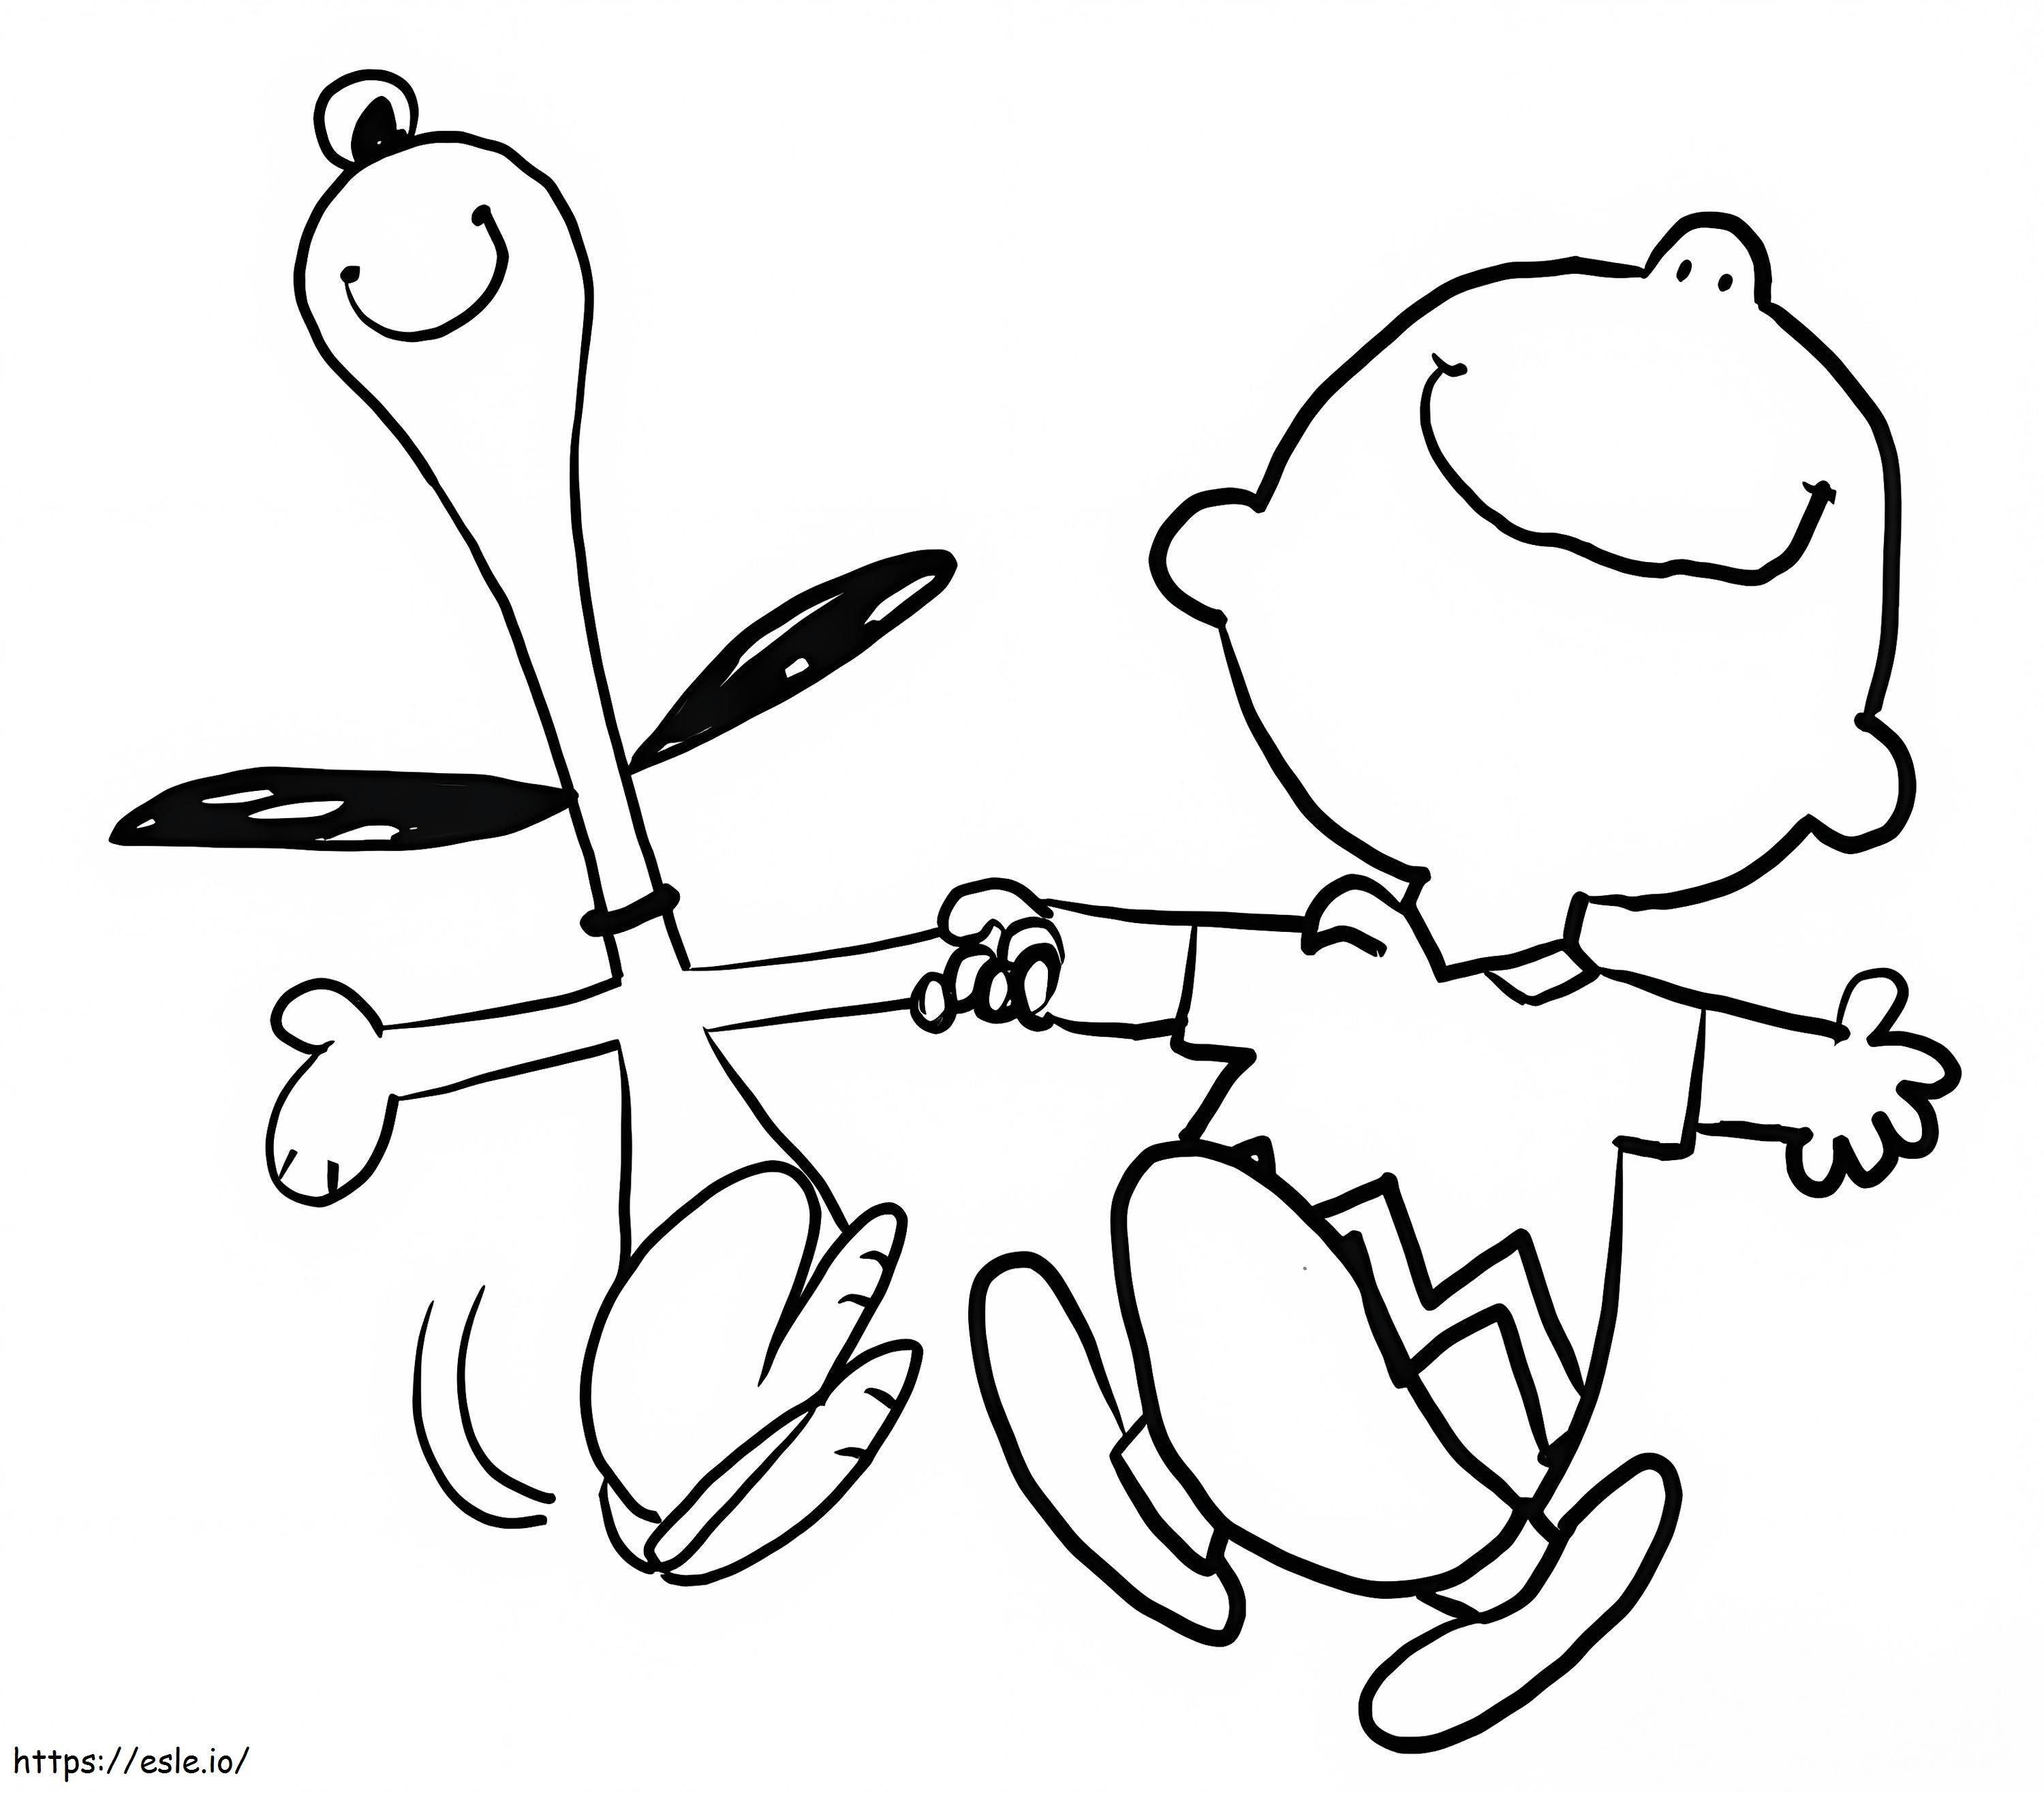 Szczęśliwy Snoopy i Charlie Brown kolorowanka